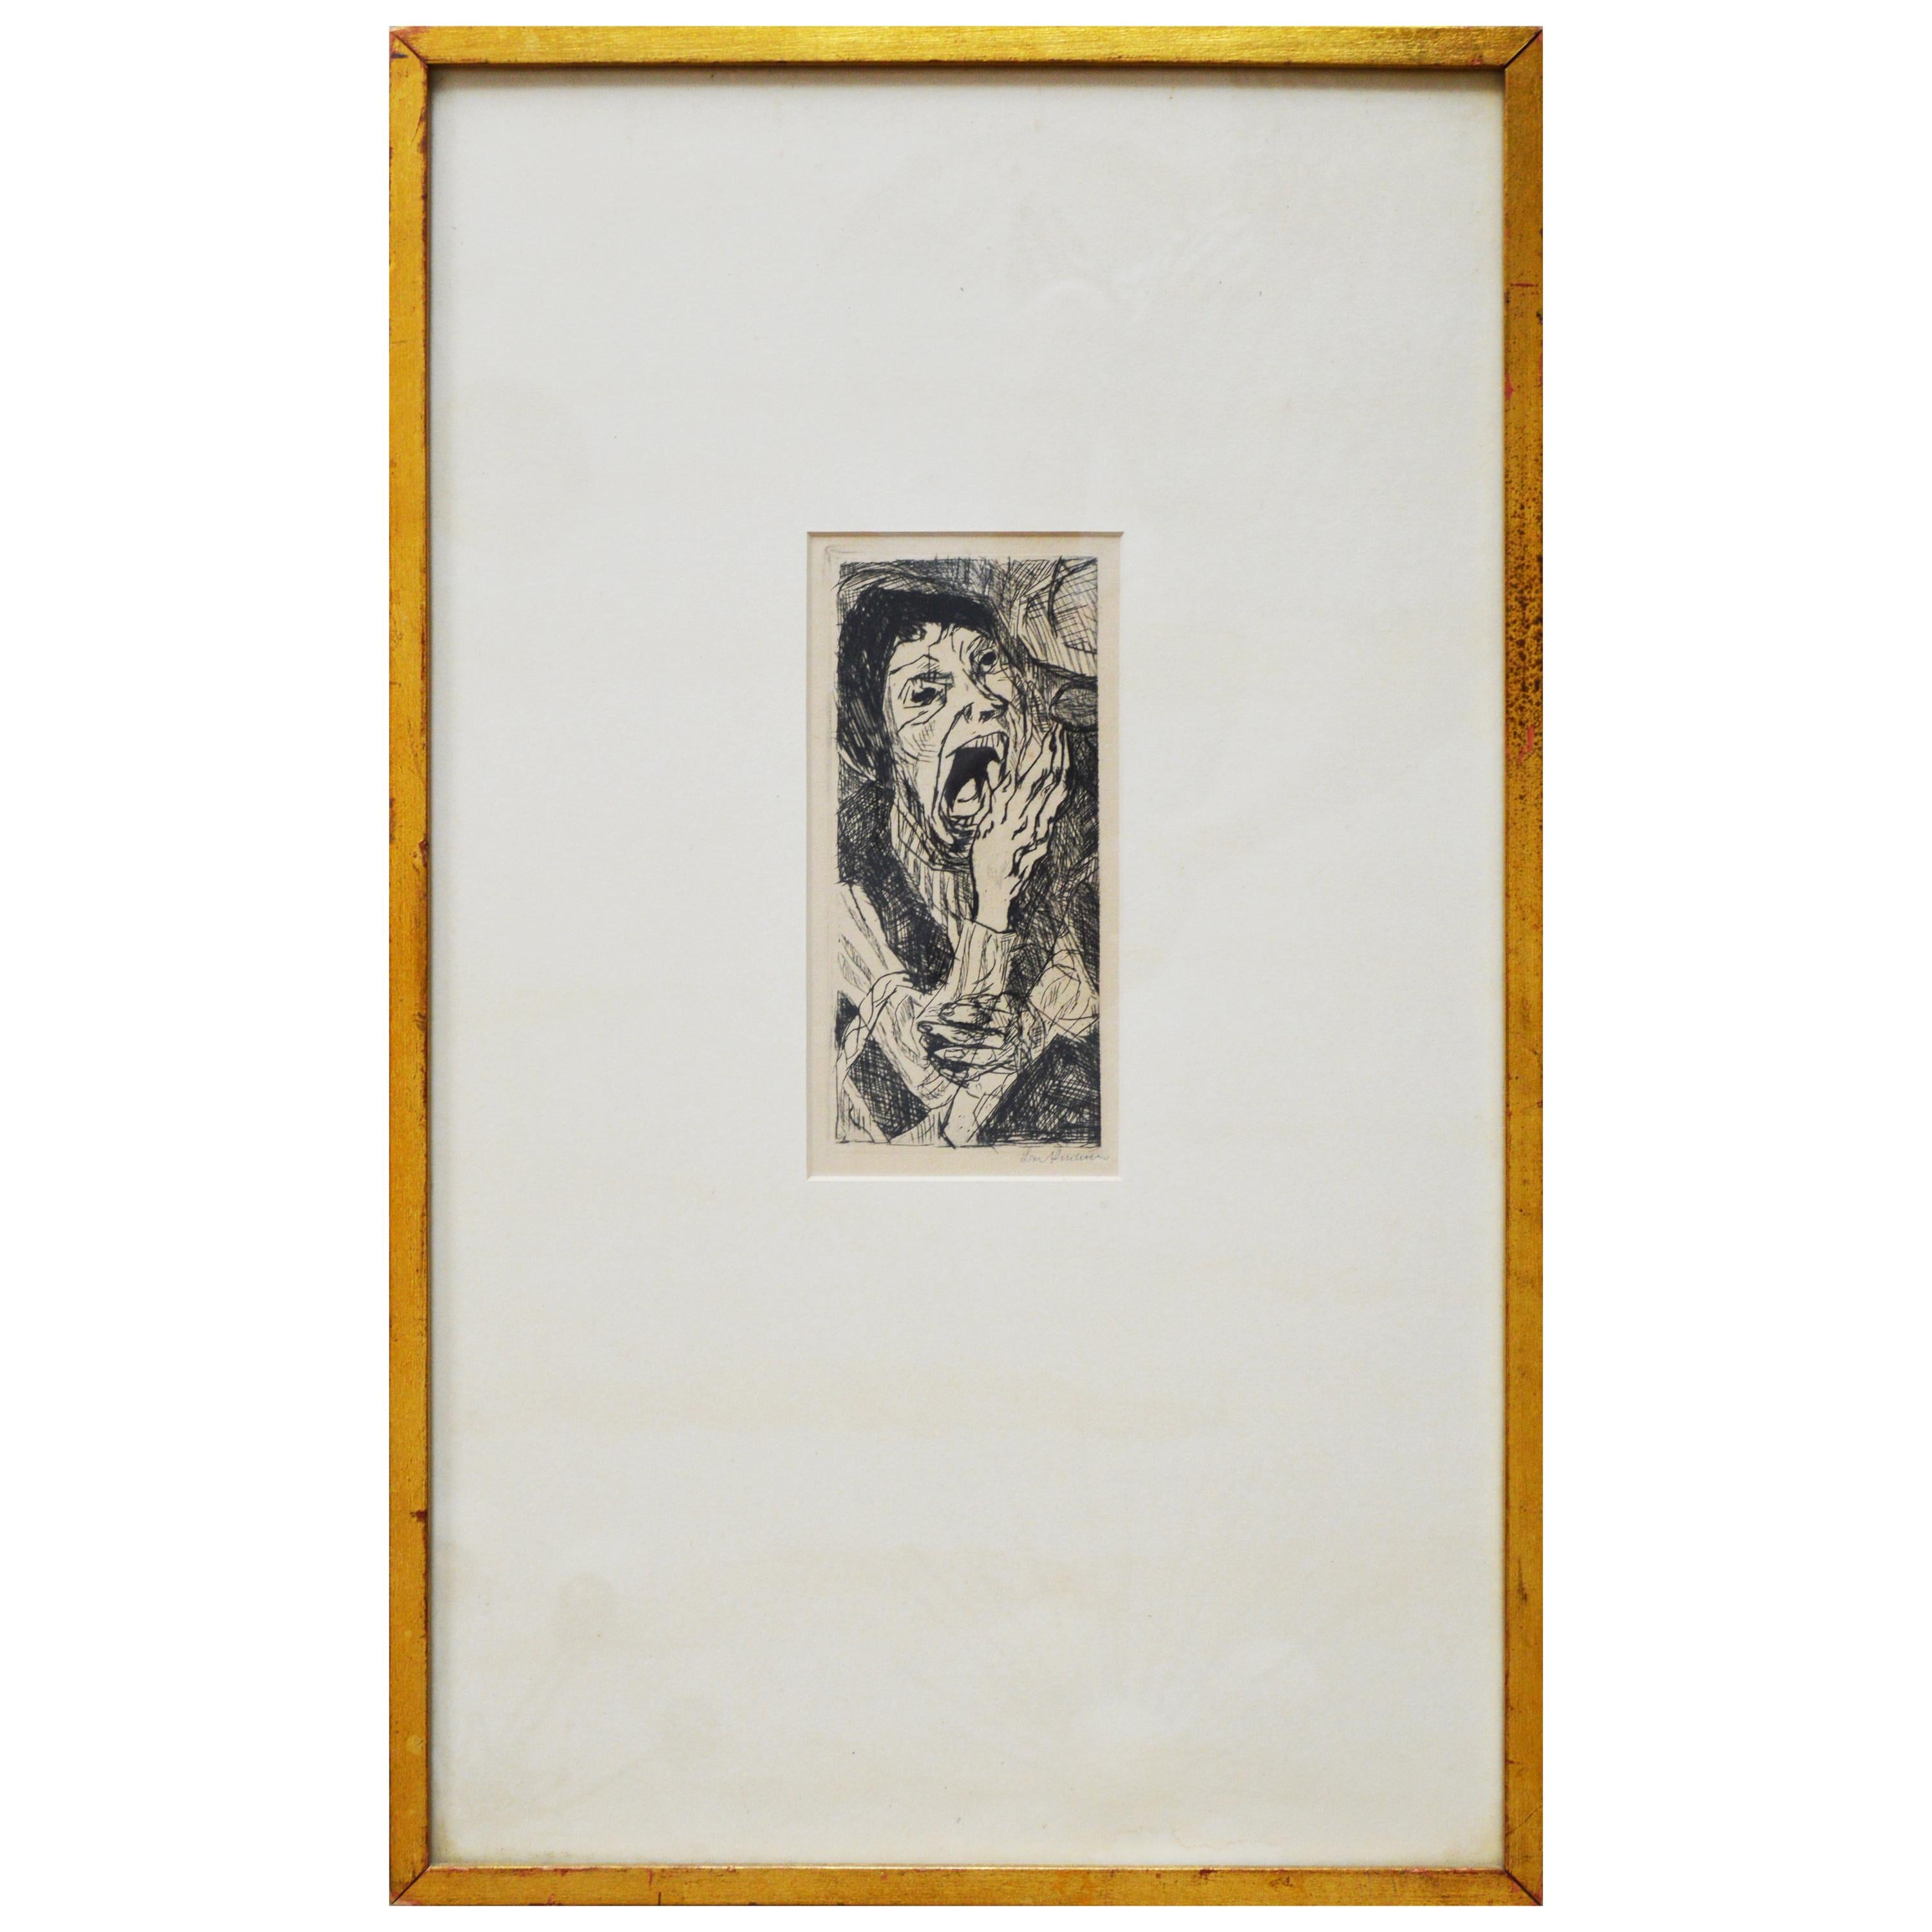 Max Beckmann Signed "Strasse II" 1916 German Expressionist Framed Drypoint Print